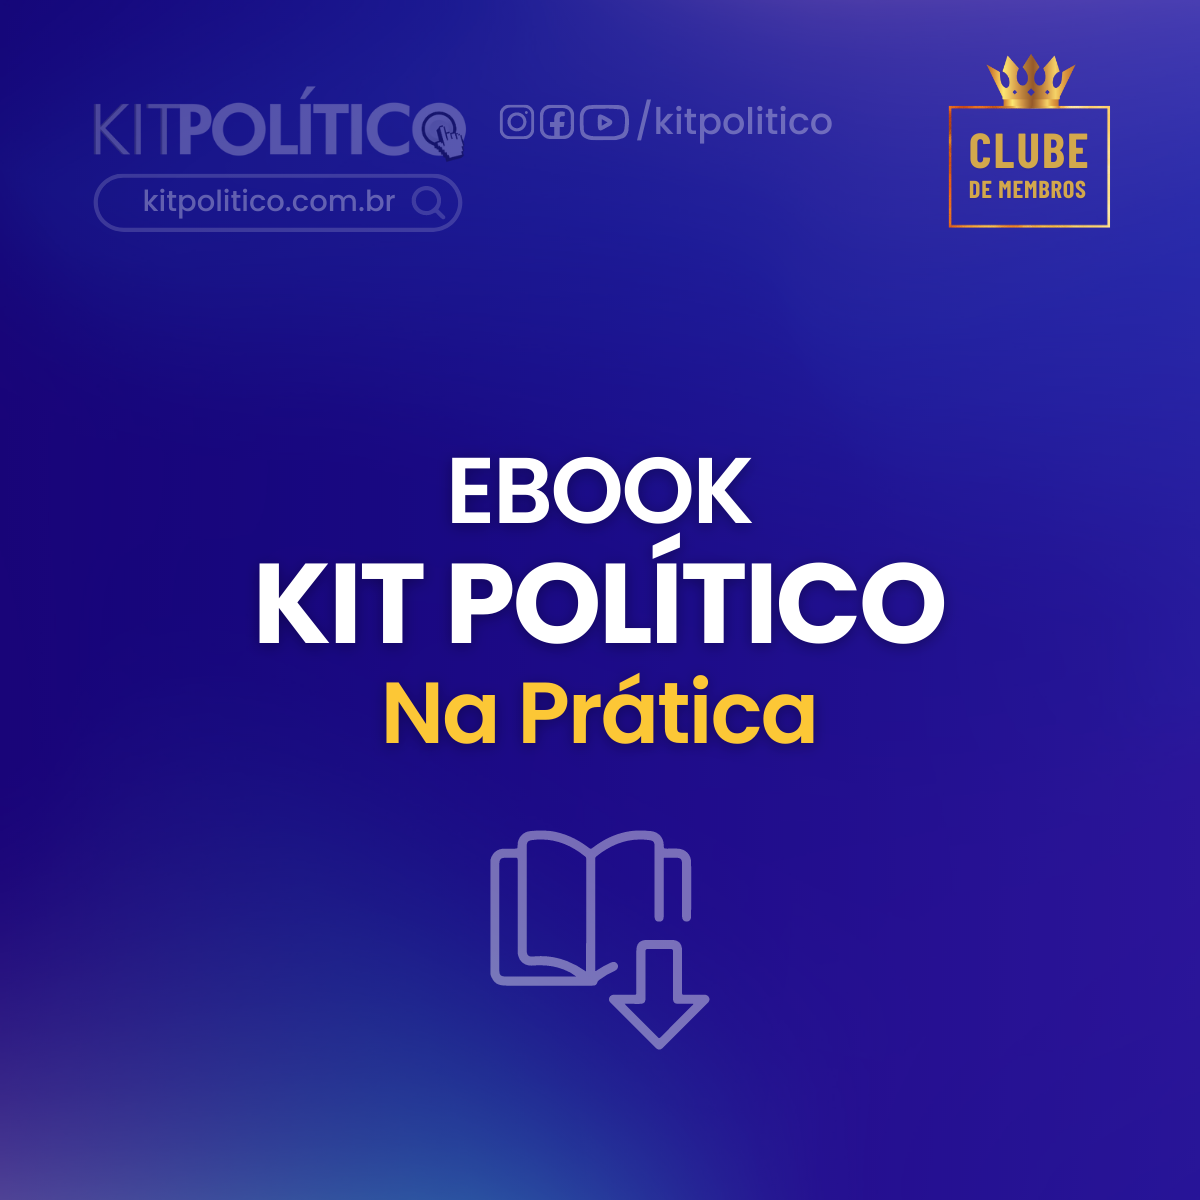 Ebook Kit Politico na Prática